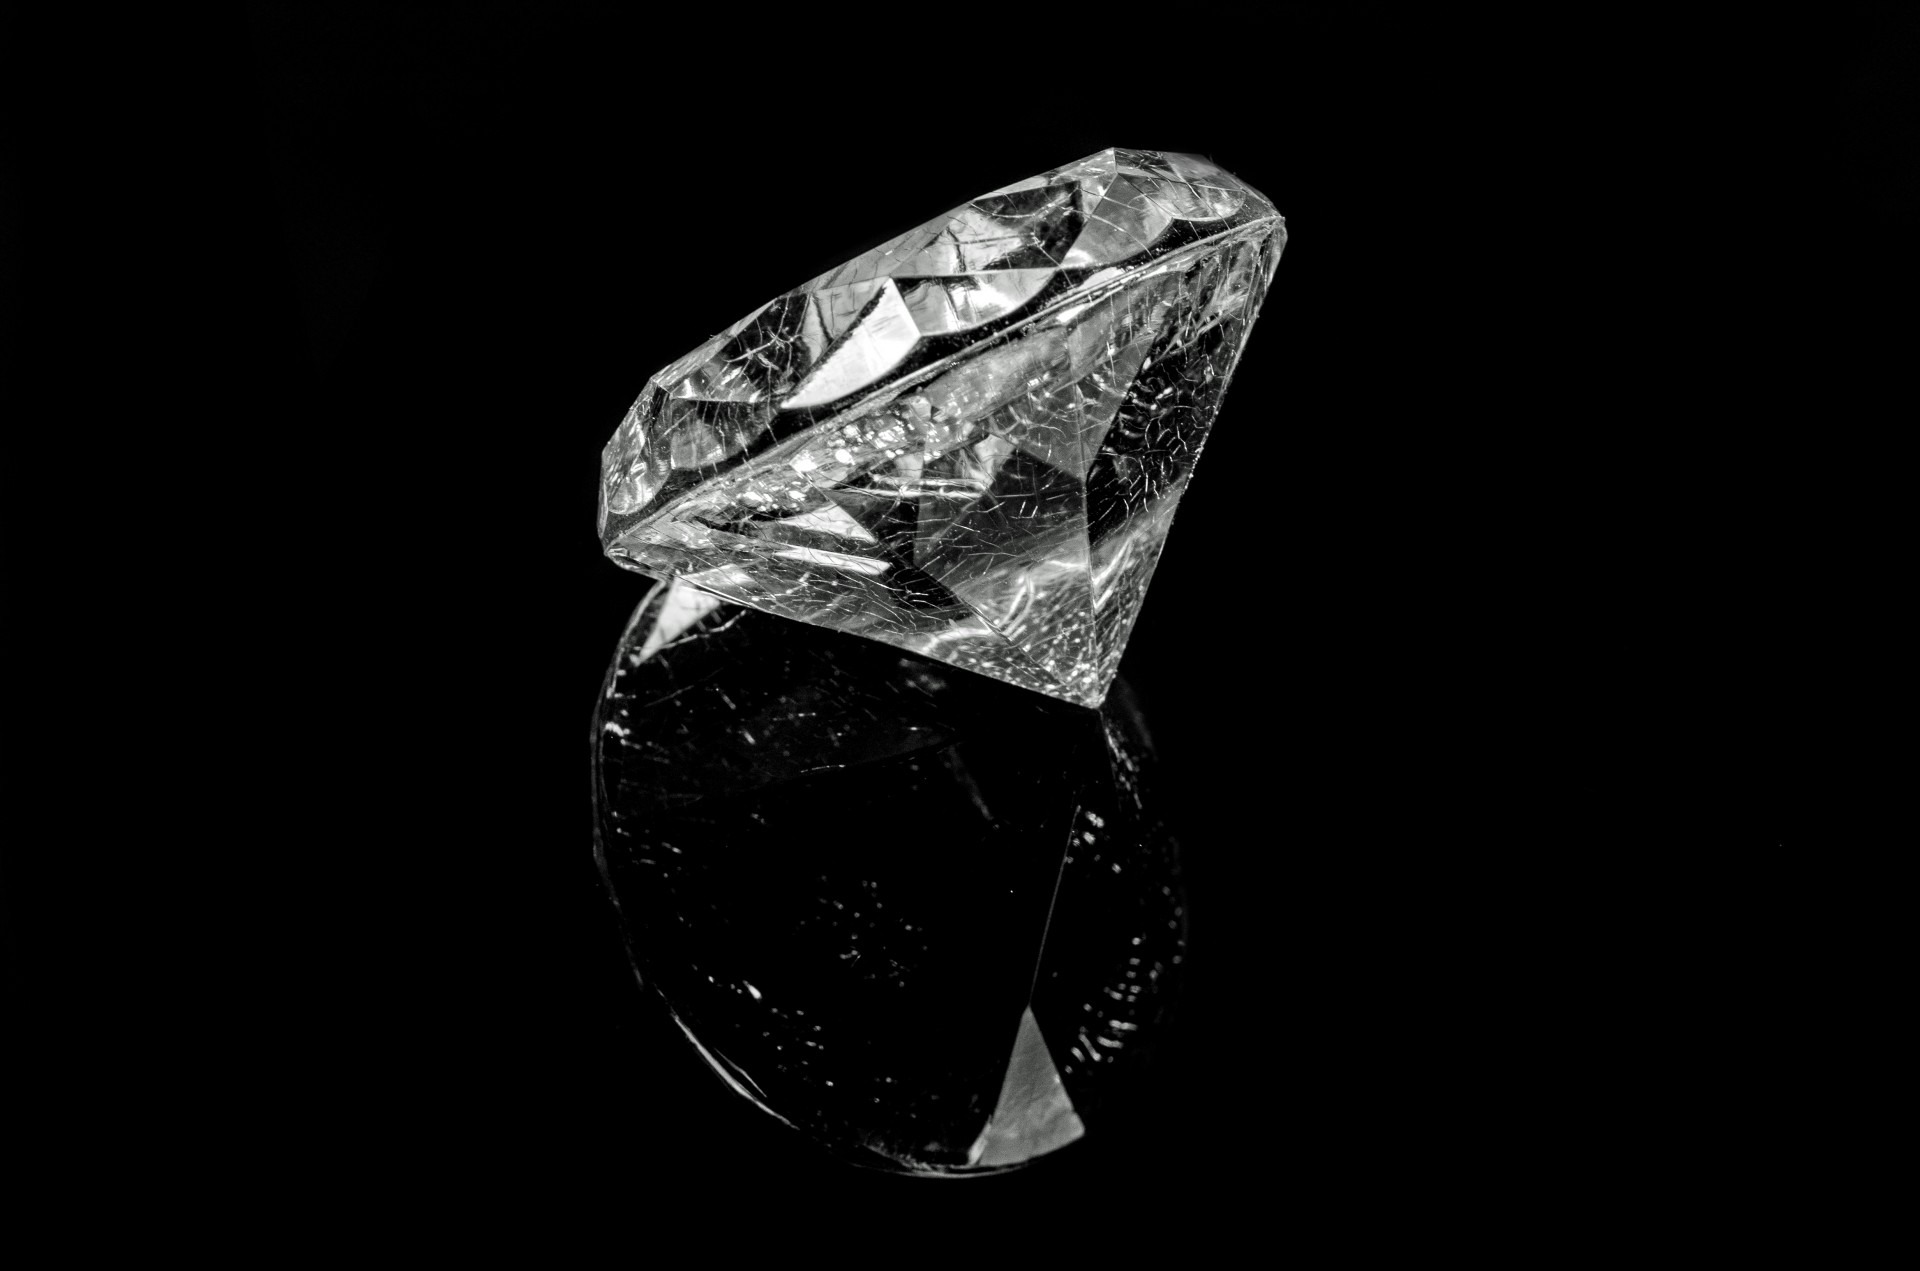 デ・ビアス社はダイヤモンド取扱会社最大手の会社として知名度も抜群